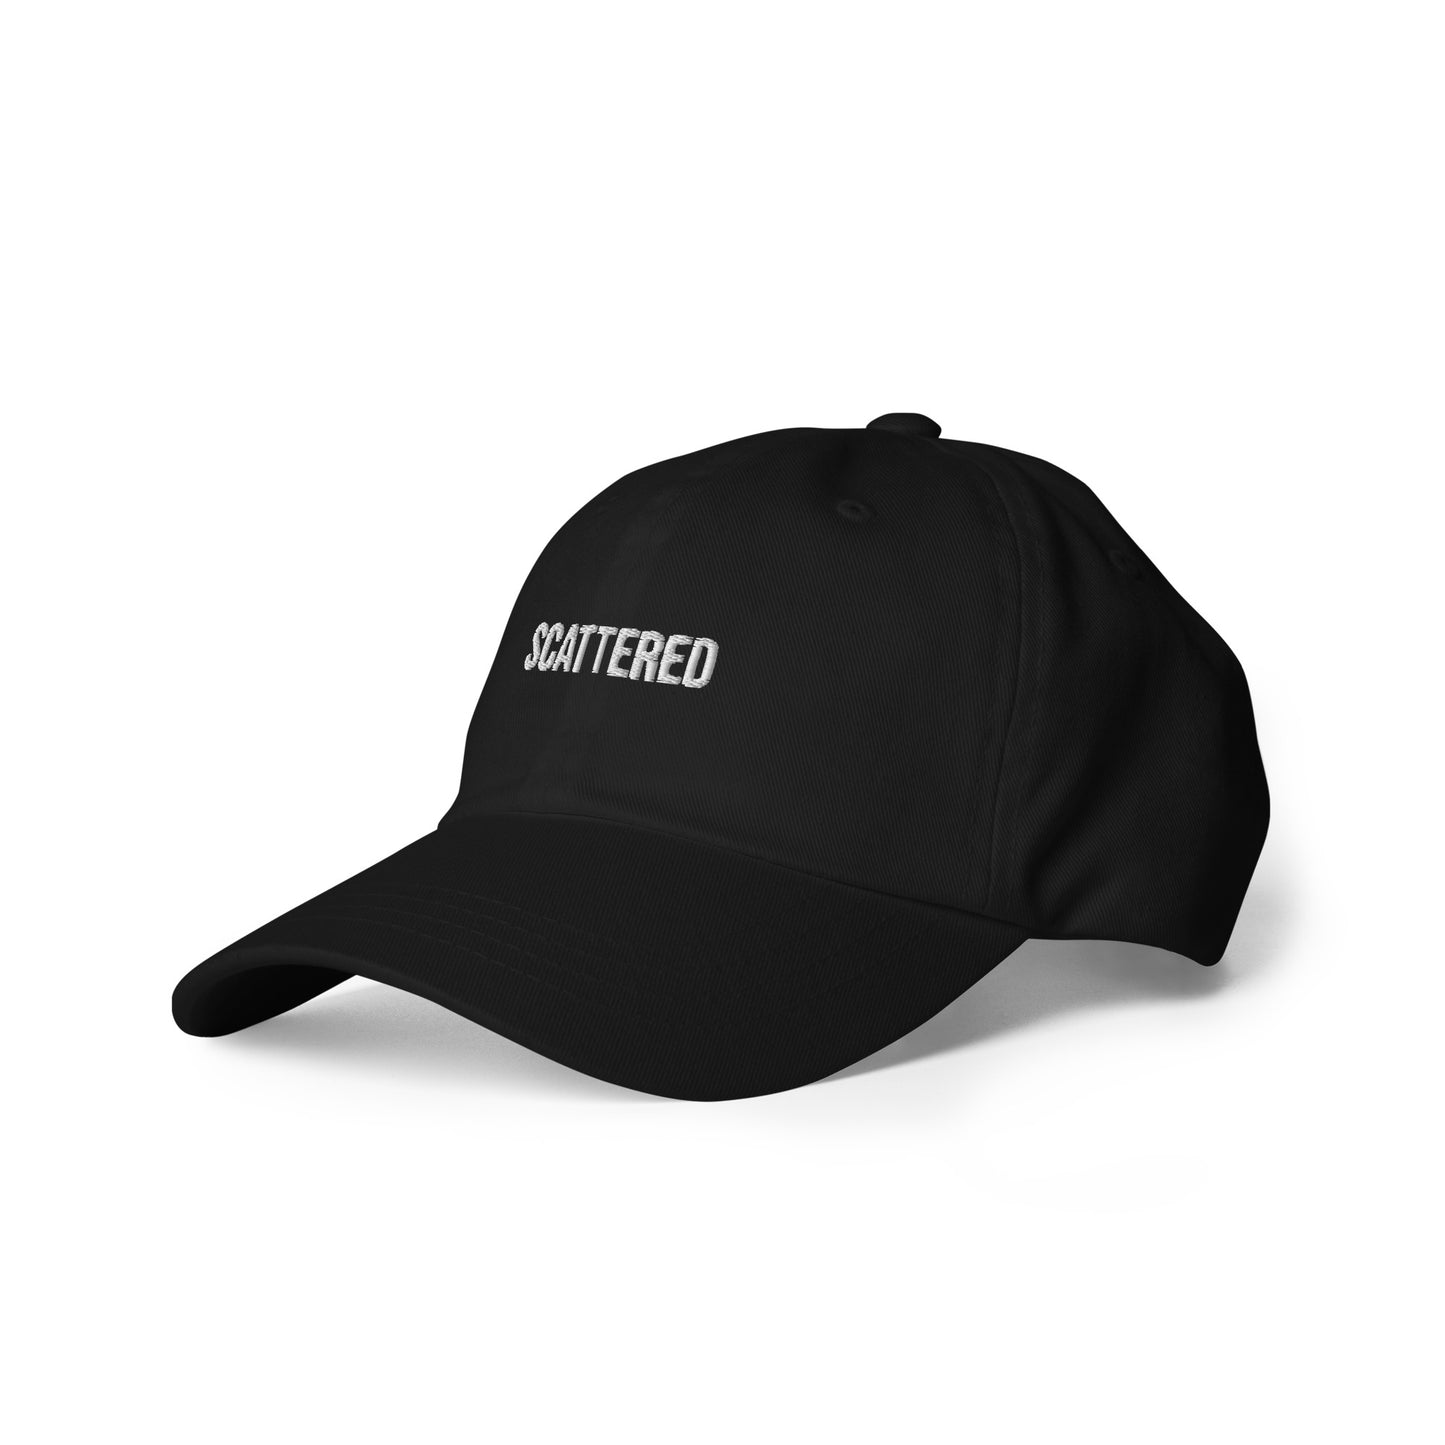 Scattered Dad Hat